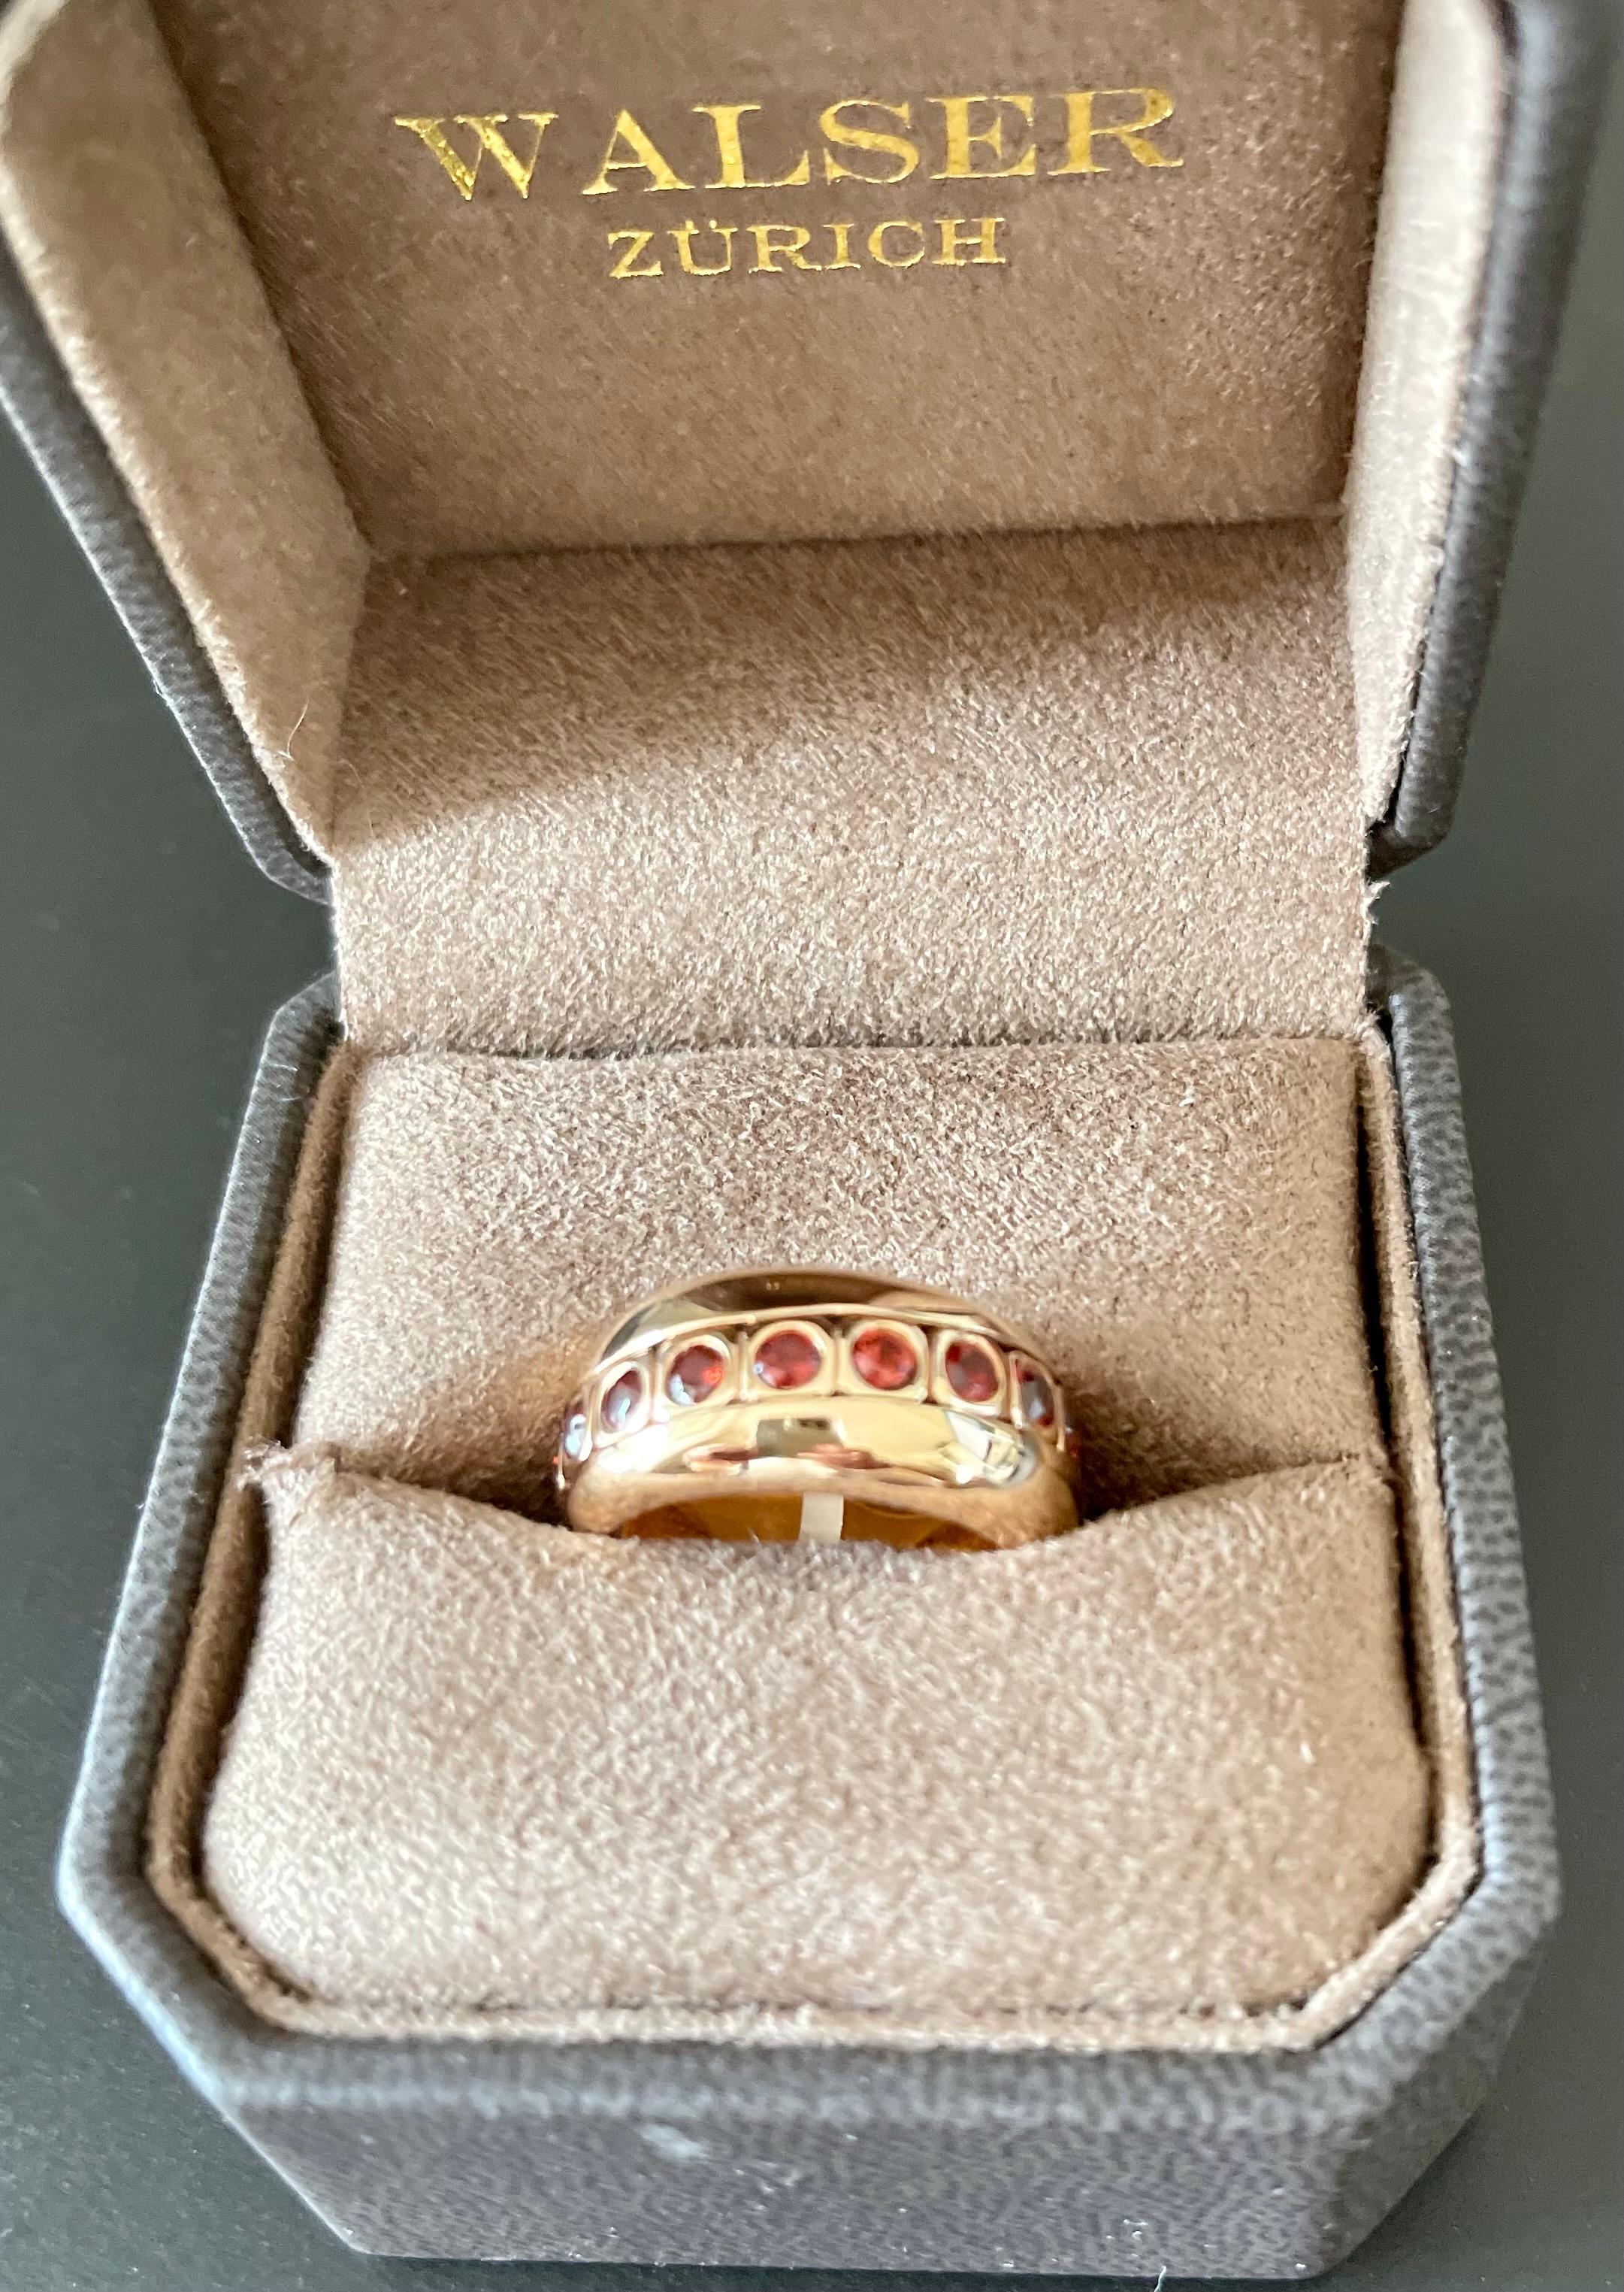 Sehr spezieller und unauffälliger Bandring mit einem besonderen Merkmal, einem beweglichen Ring im Inneren des Rings.
ring aus 18 K Roségold mit beweglichem Innenring, besetzt mit 18 lebhaften orangefarbenen Mandarin-Granaten von 2,75 ct. 
Der Ring